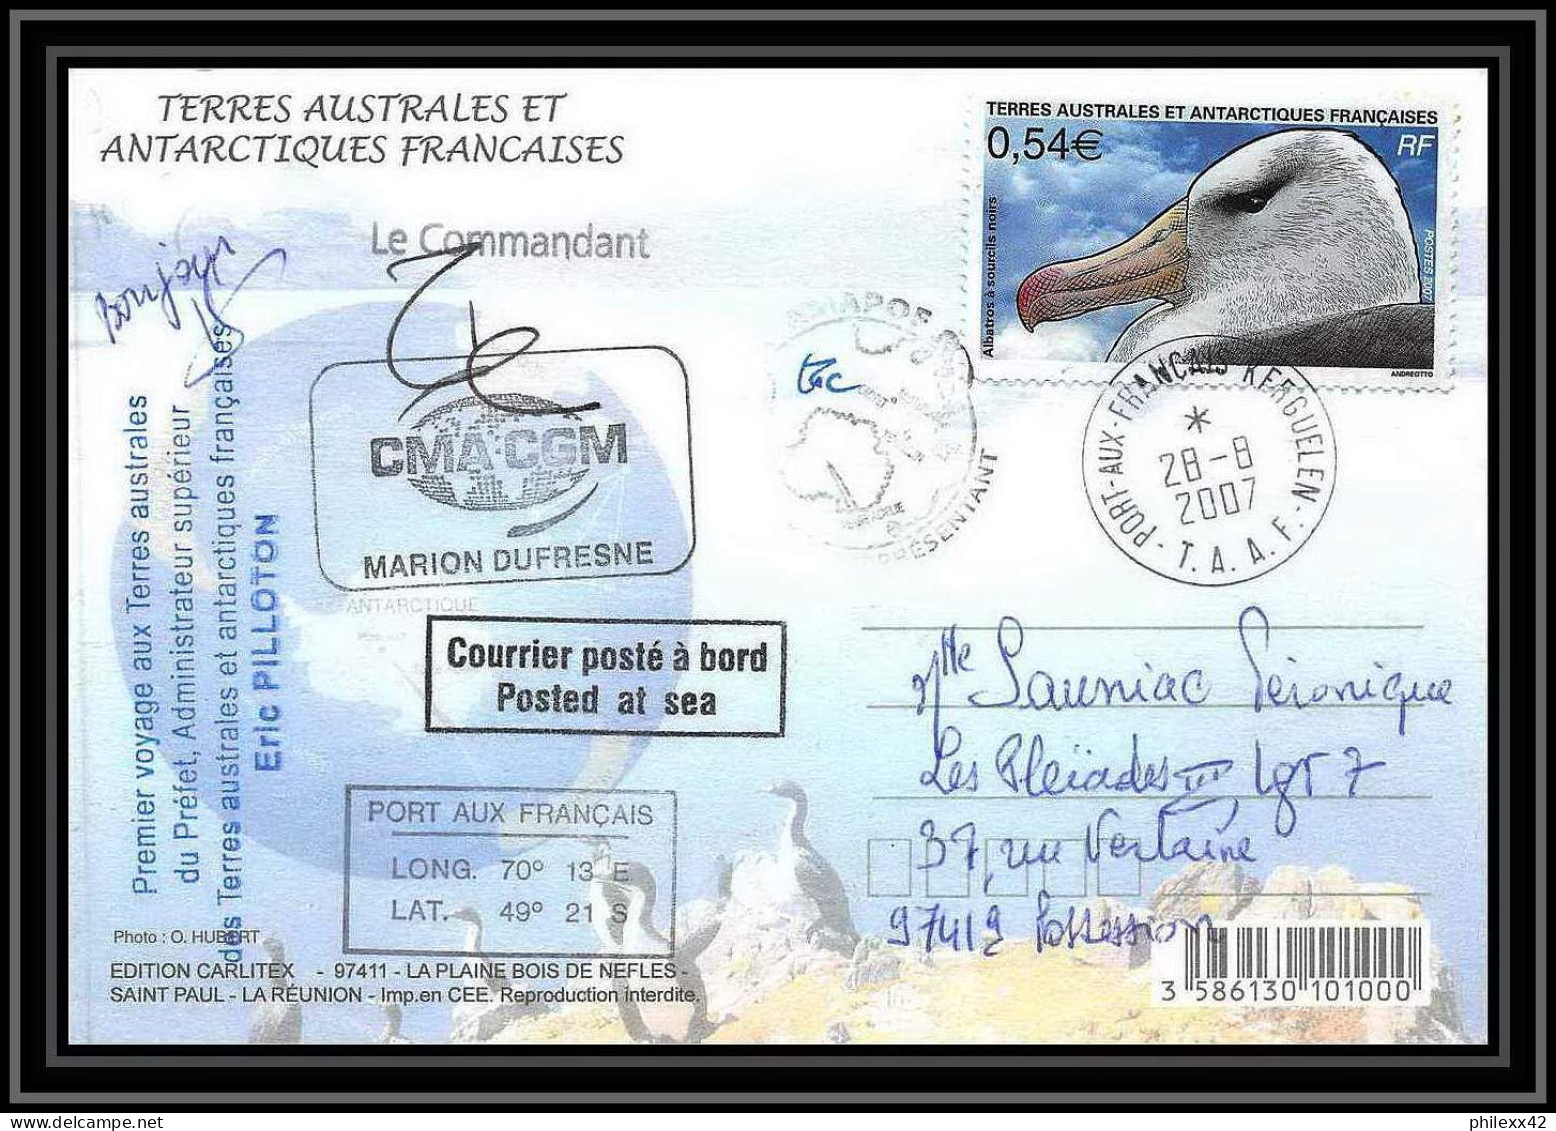 2758 ANTARCTIC Terres Australes (taaf)-carte Postale Dufresne 2 Signé Signed Op 2007/2 N°466 KERGUELEN 28/8/2007 - Briefe U. Dokumente